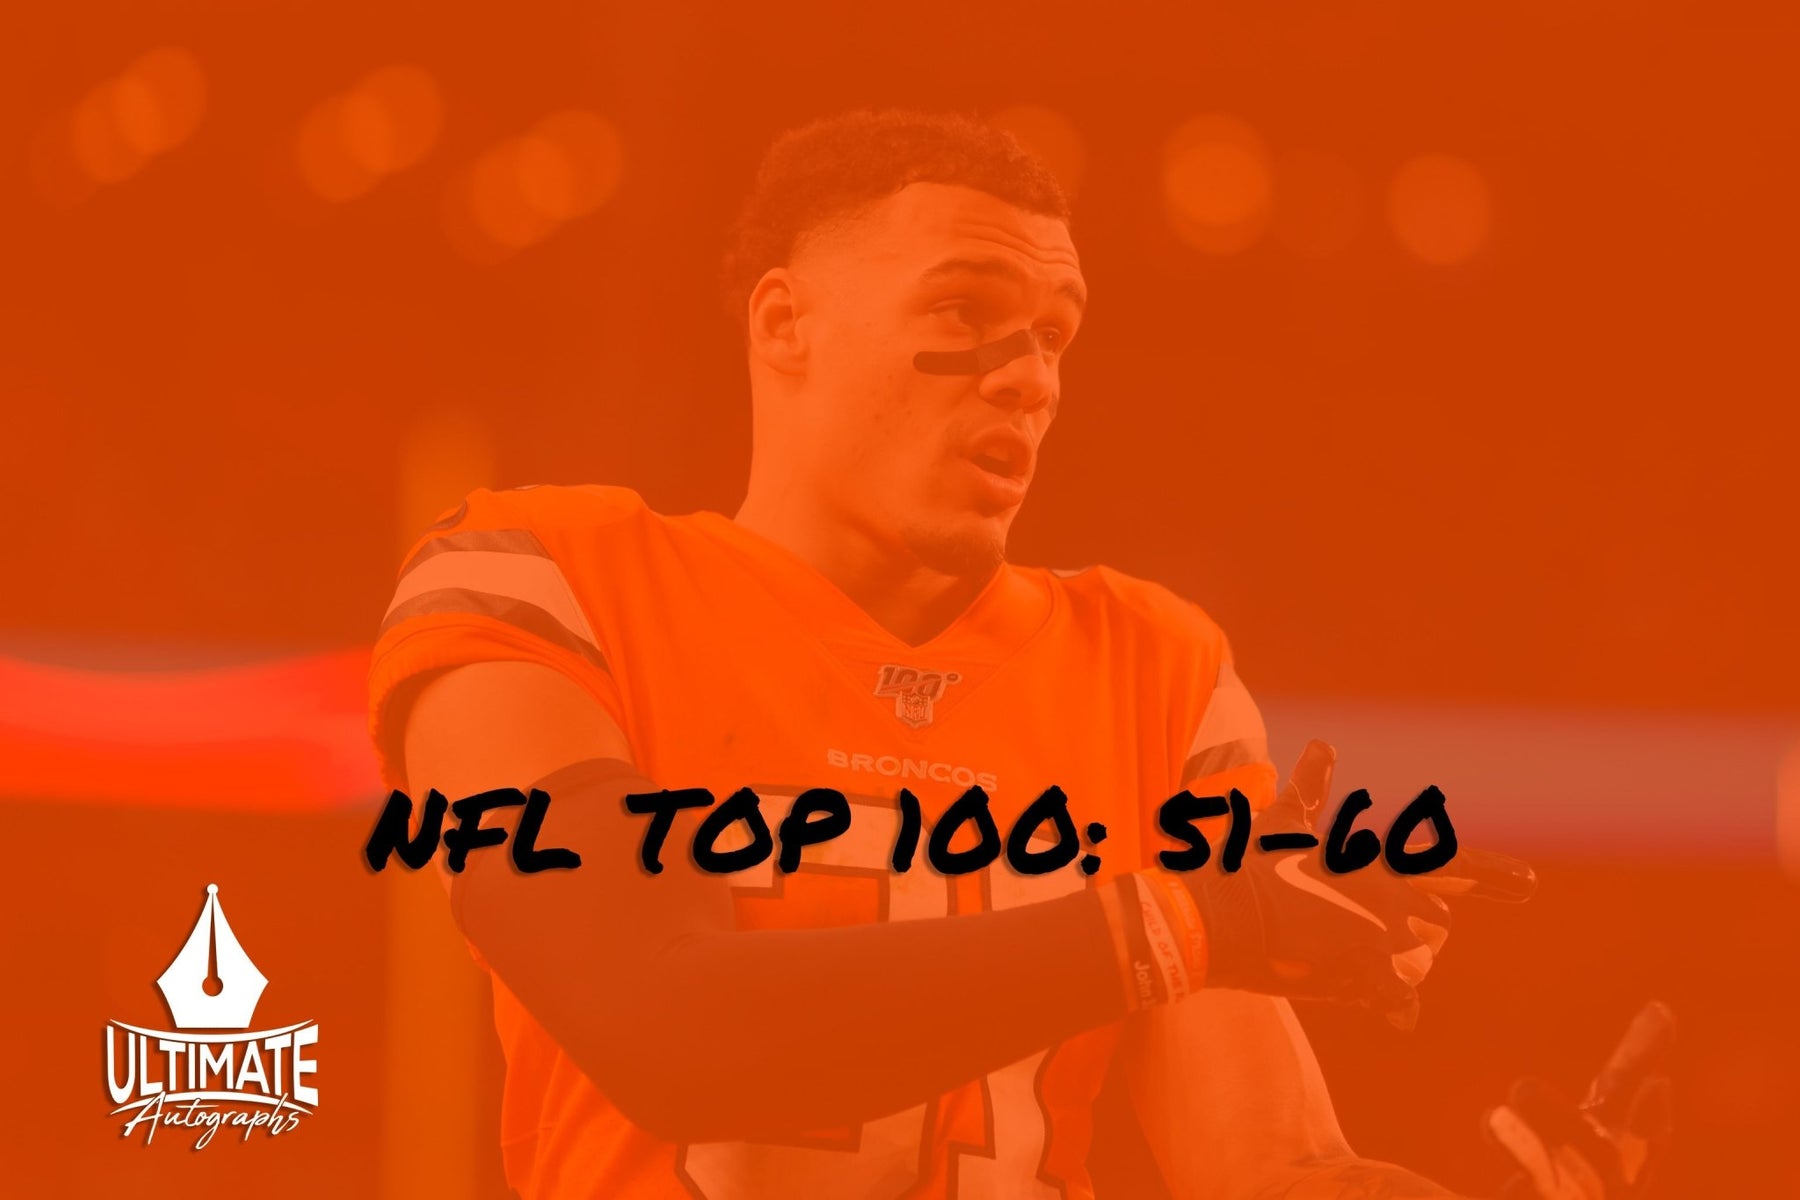 NFL Top 100: 51-60